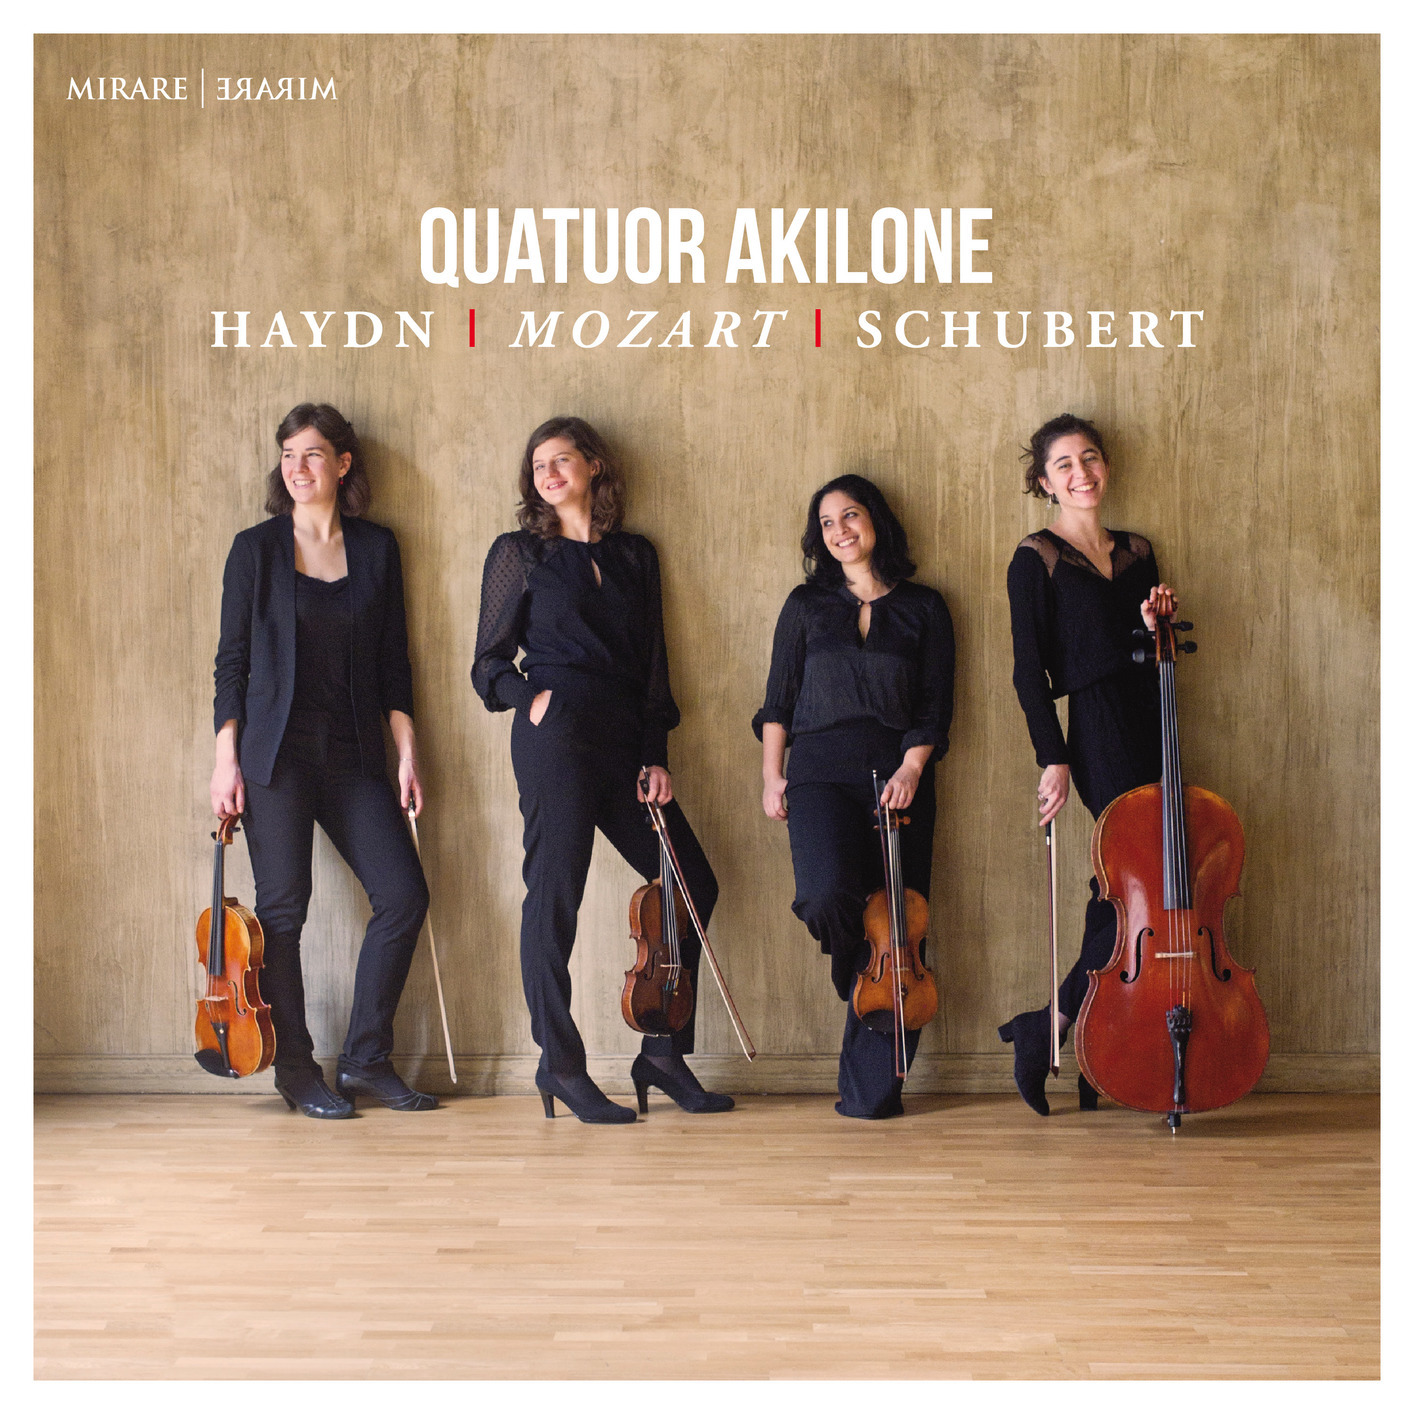 Quatuor Akilone – Haydn, Mozart & Schubert (2018) [FLAC 24bit/48kHz]